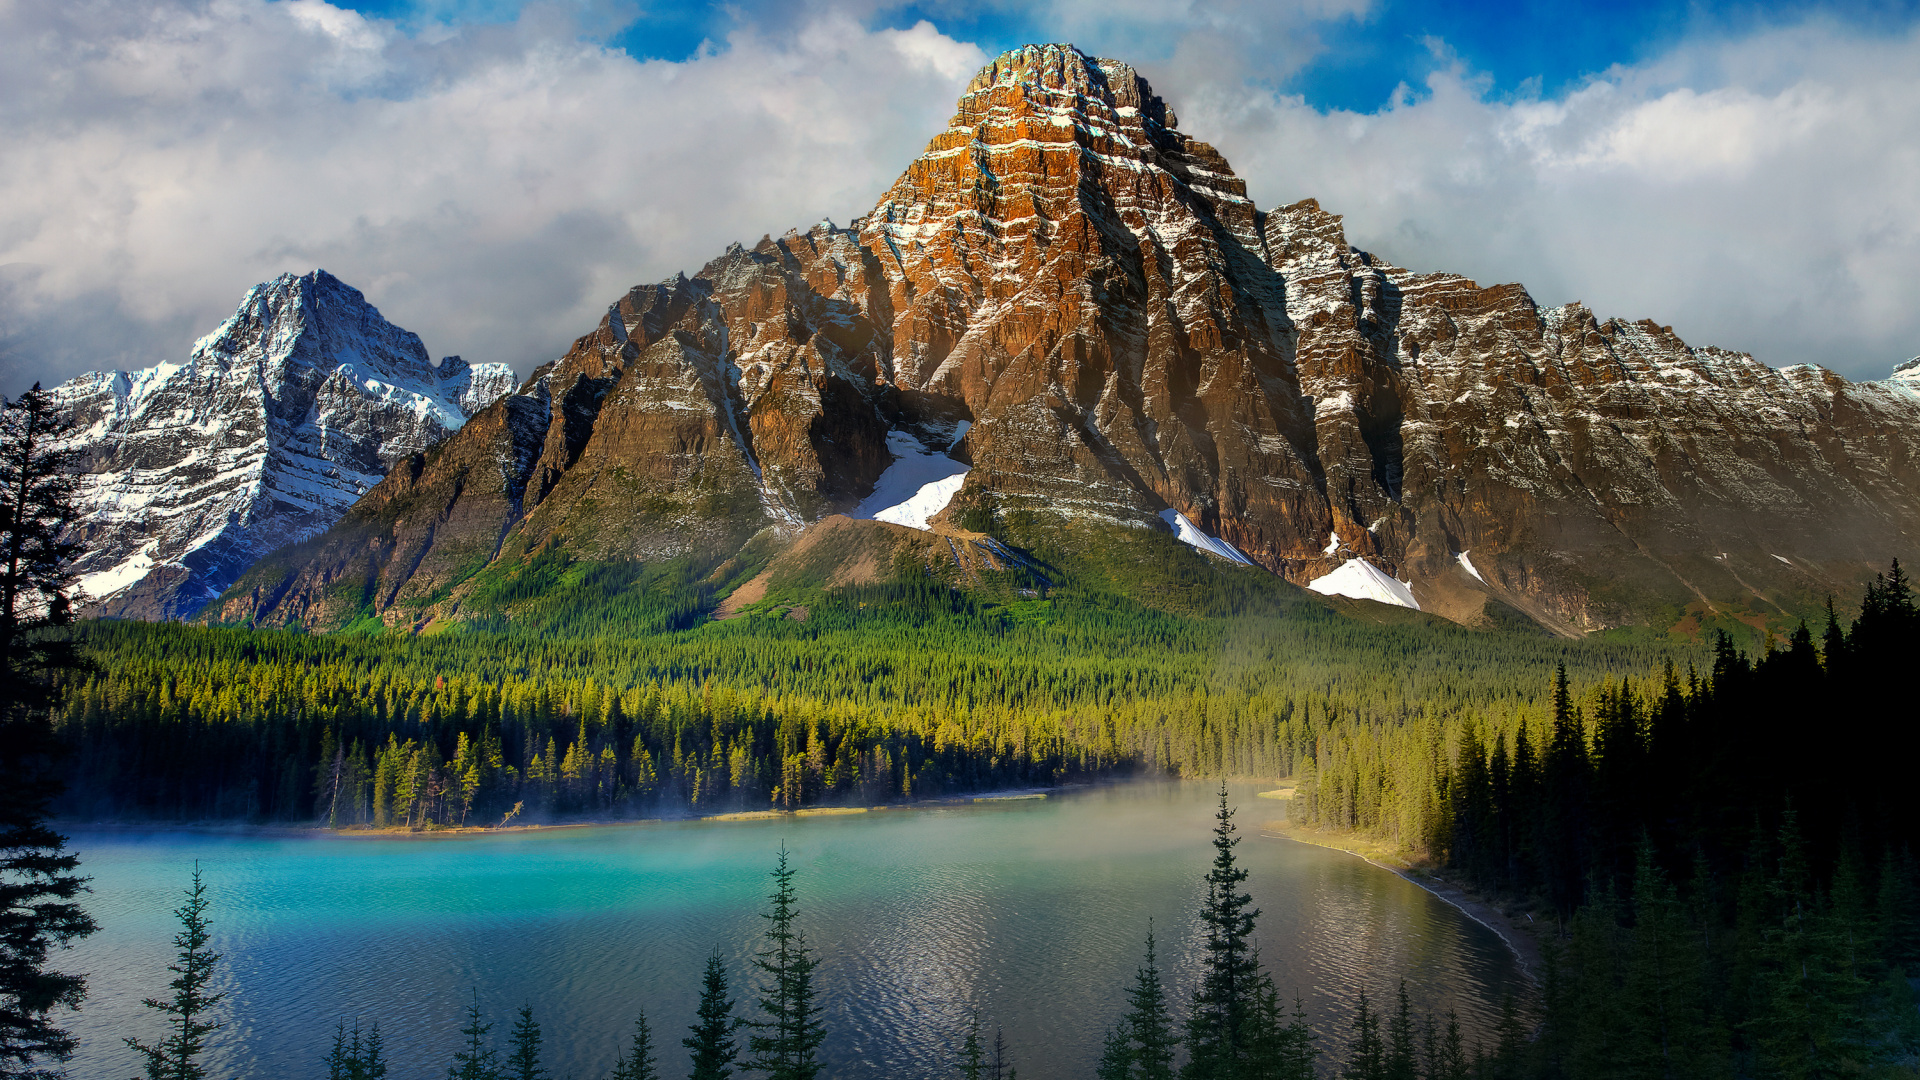 زیباترین عکس کوهستانی و جلگه های سرسبز مخصوص بک گراند 